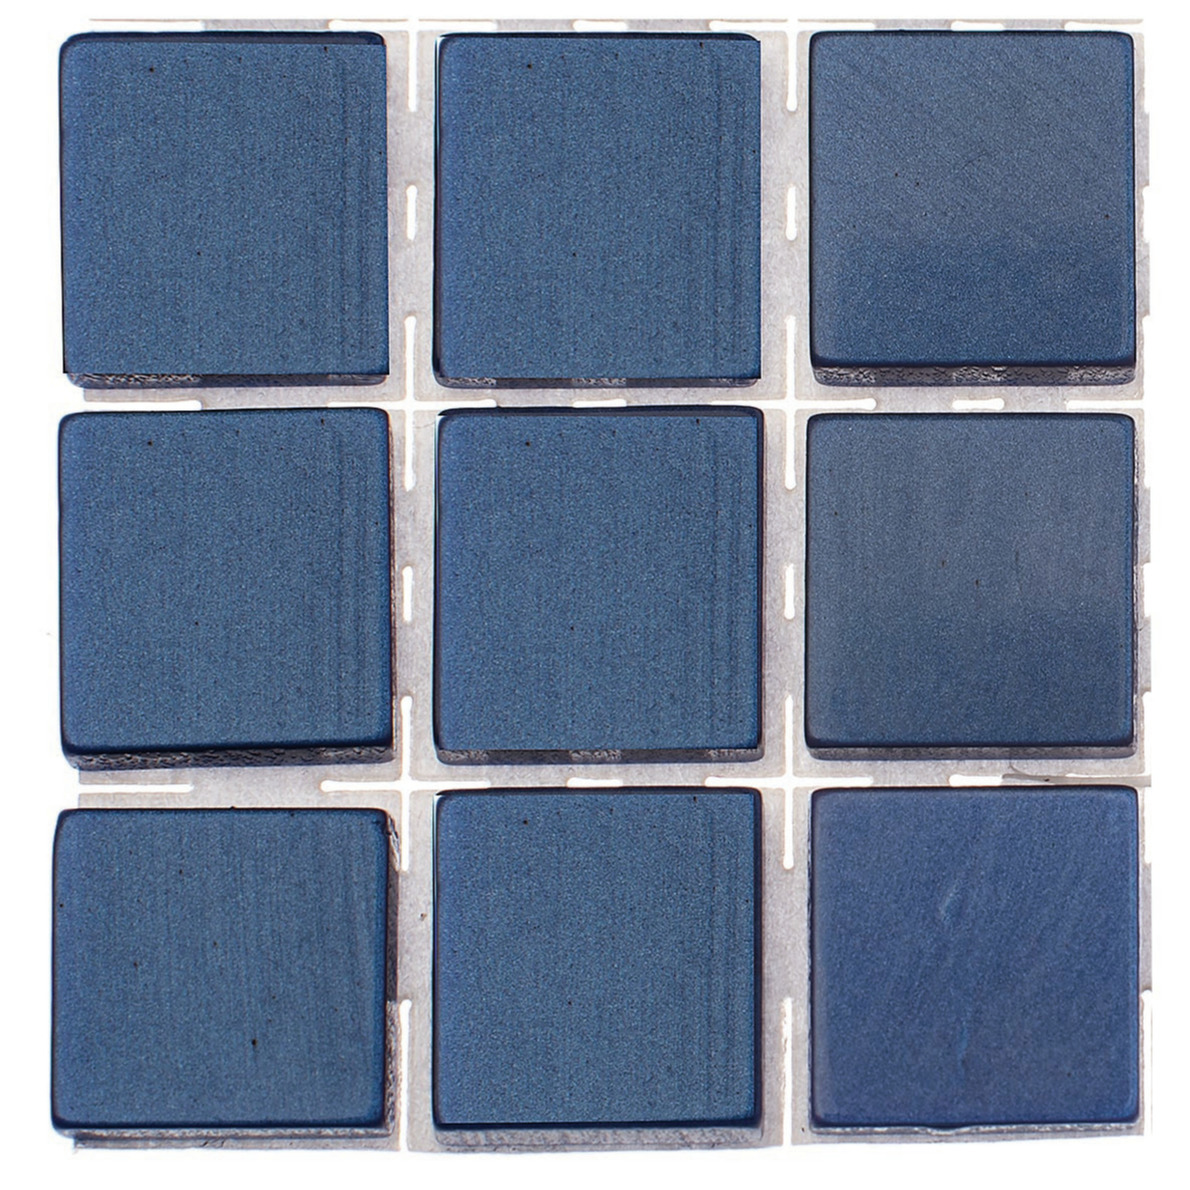 189x stuks mozaieken maken steentjes-tegels kleur donkerblauw 10 x 10 x 2 mm